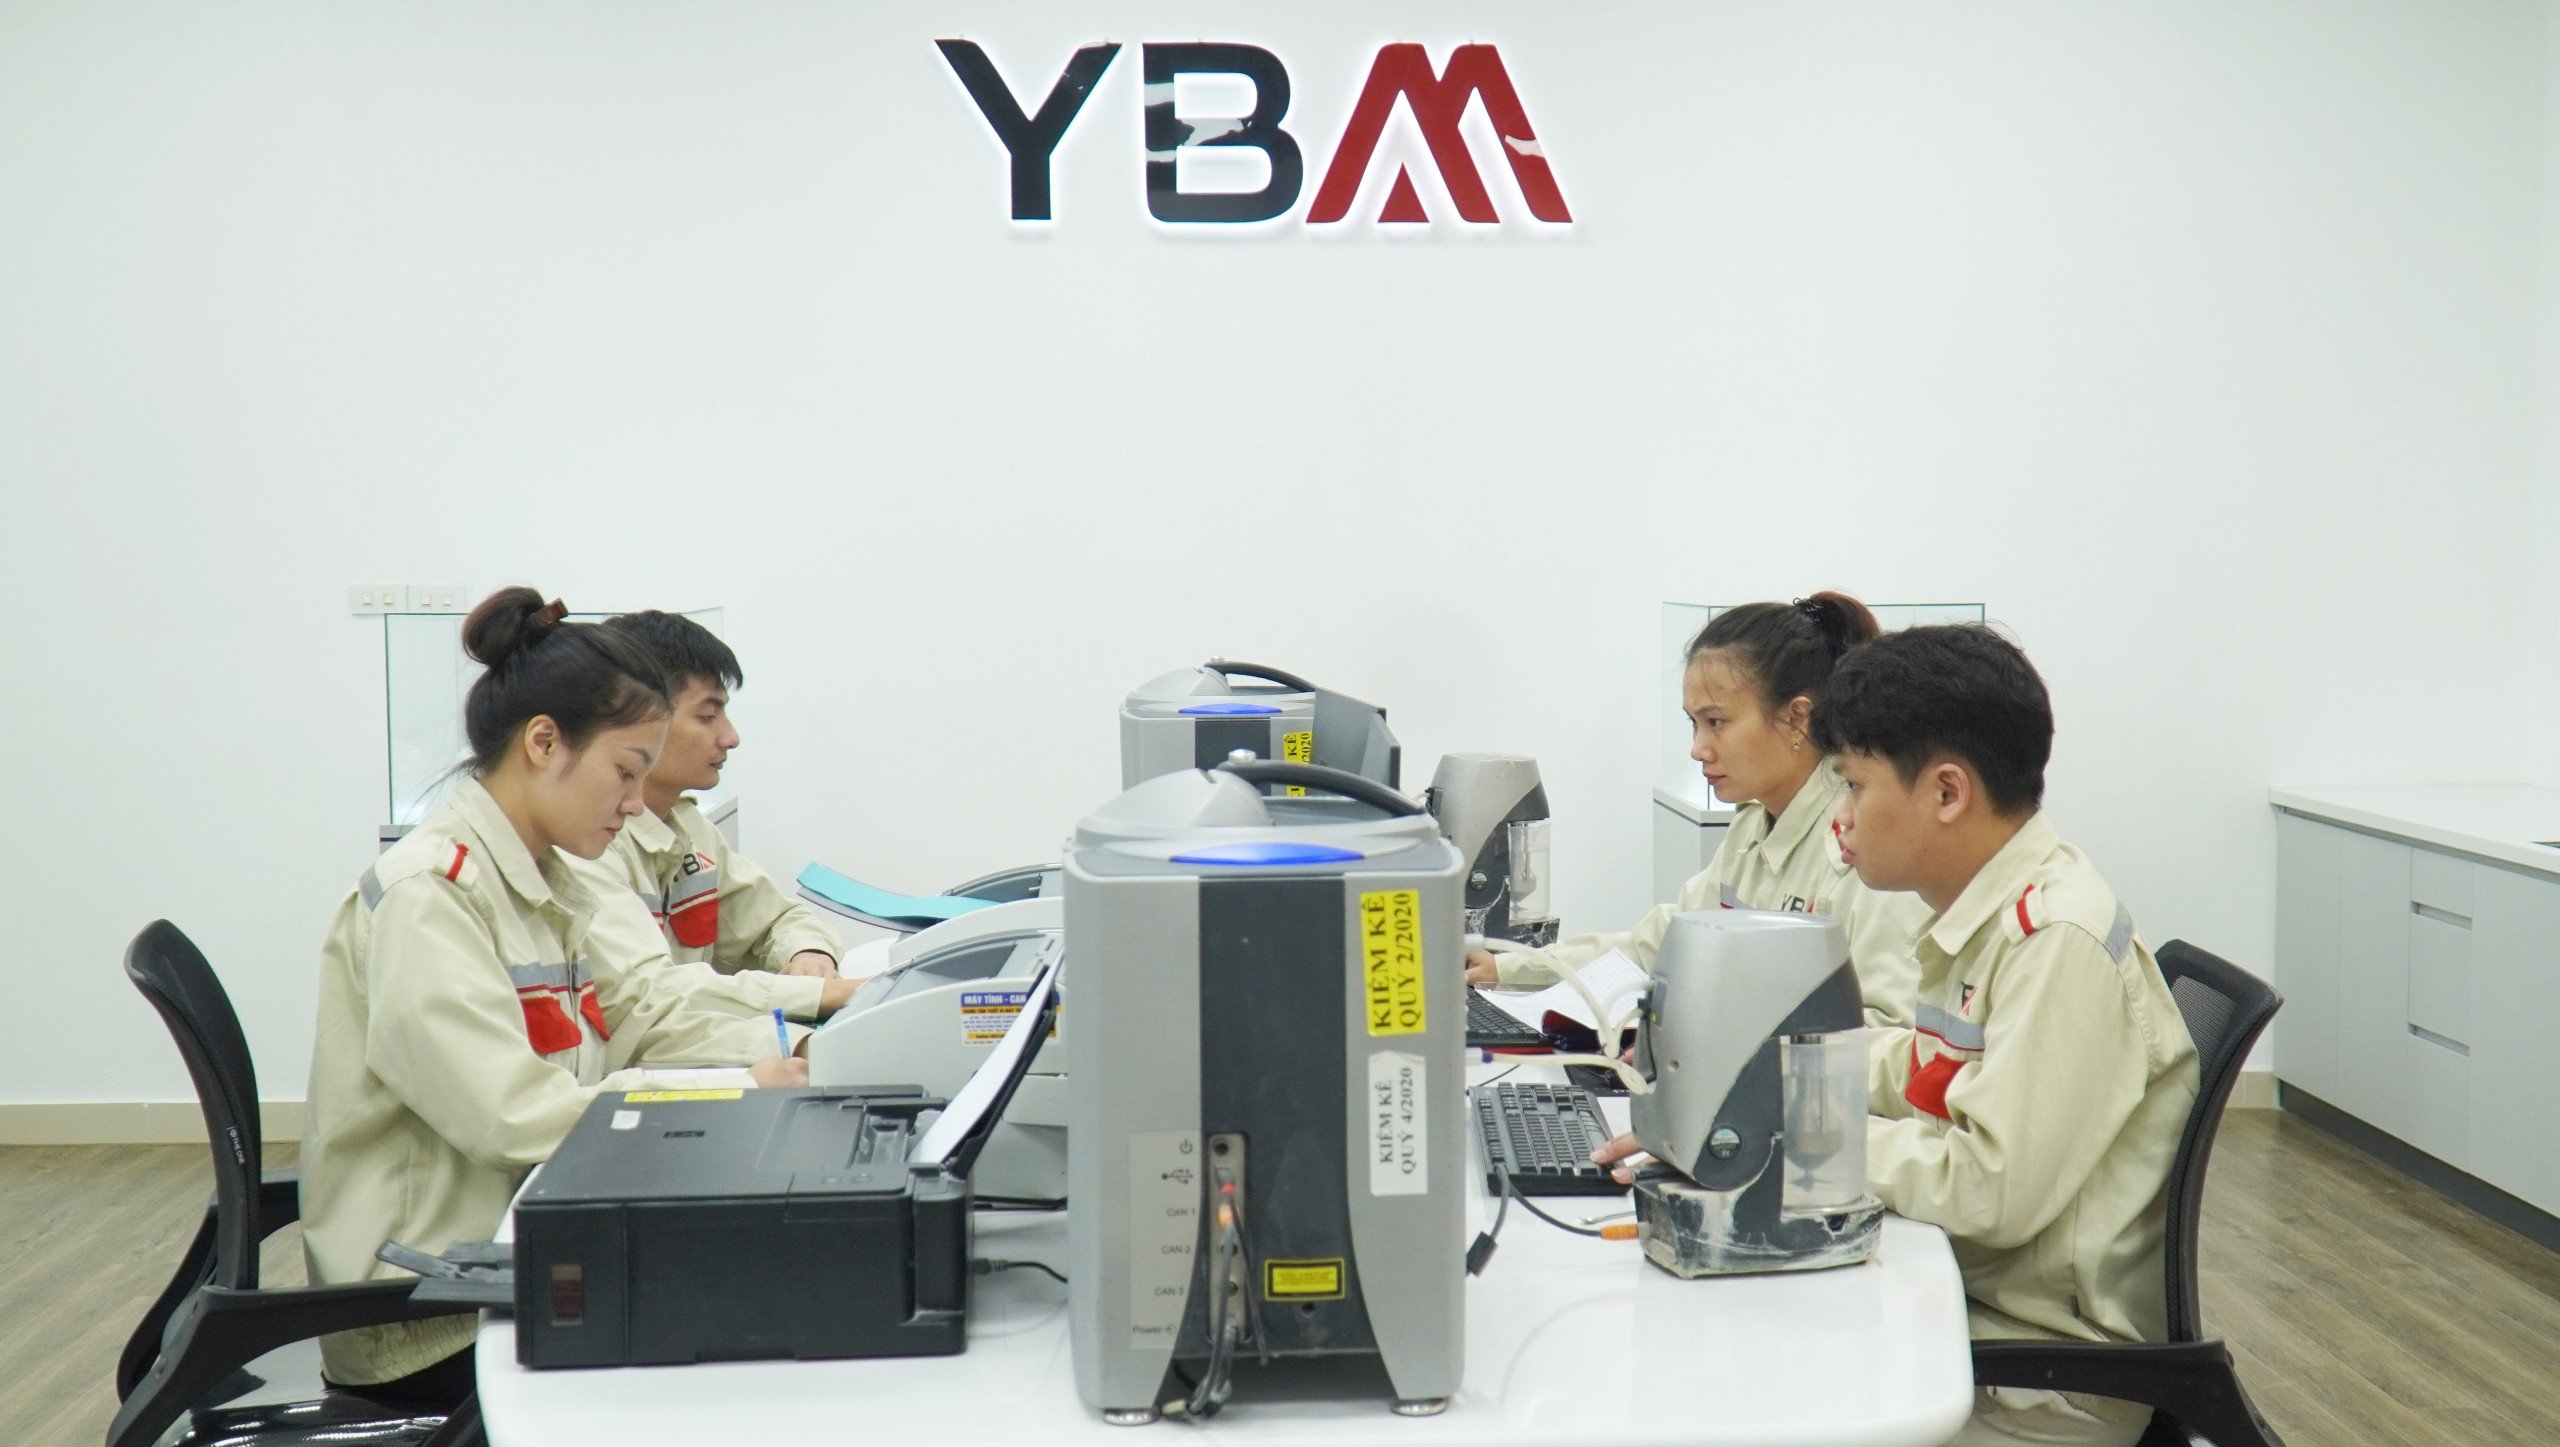 YBM quality control